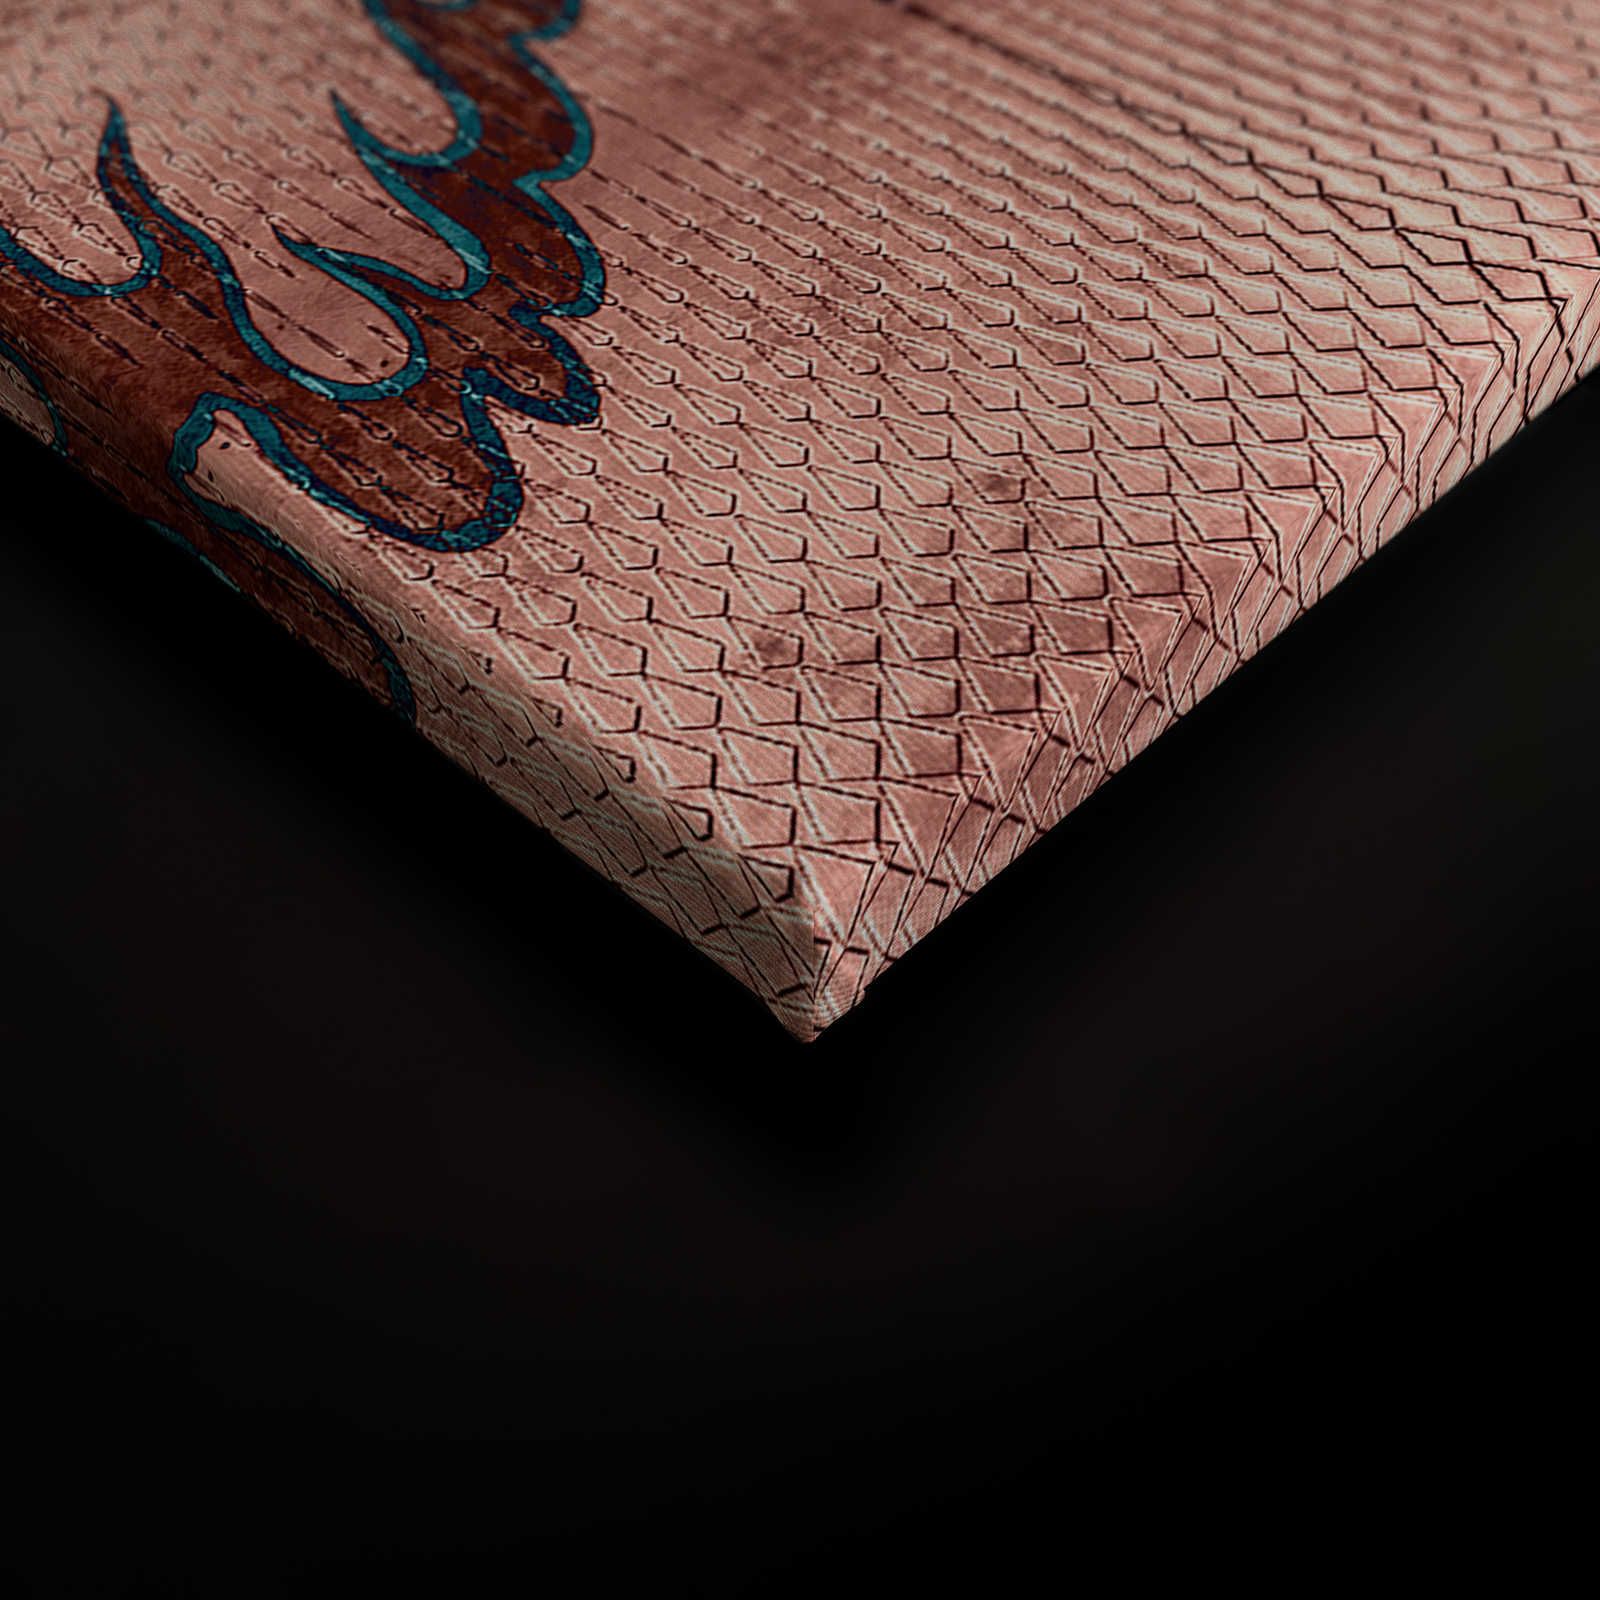             Shenzen 1 - Quadro su tela Dragon Asian Syle con colori metallici - 0,90 m x 0,60 m
        